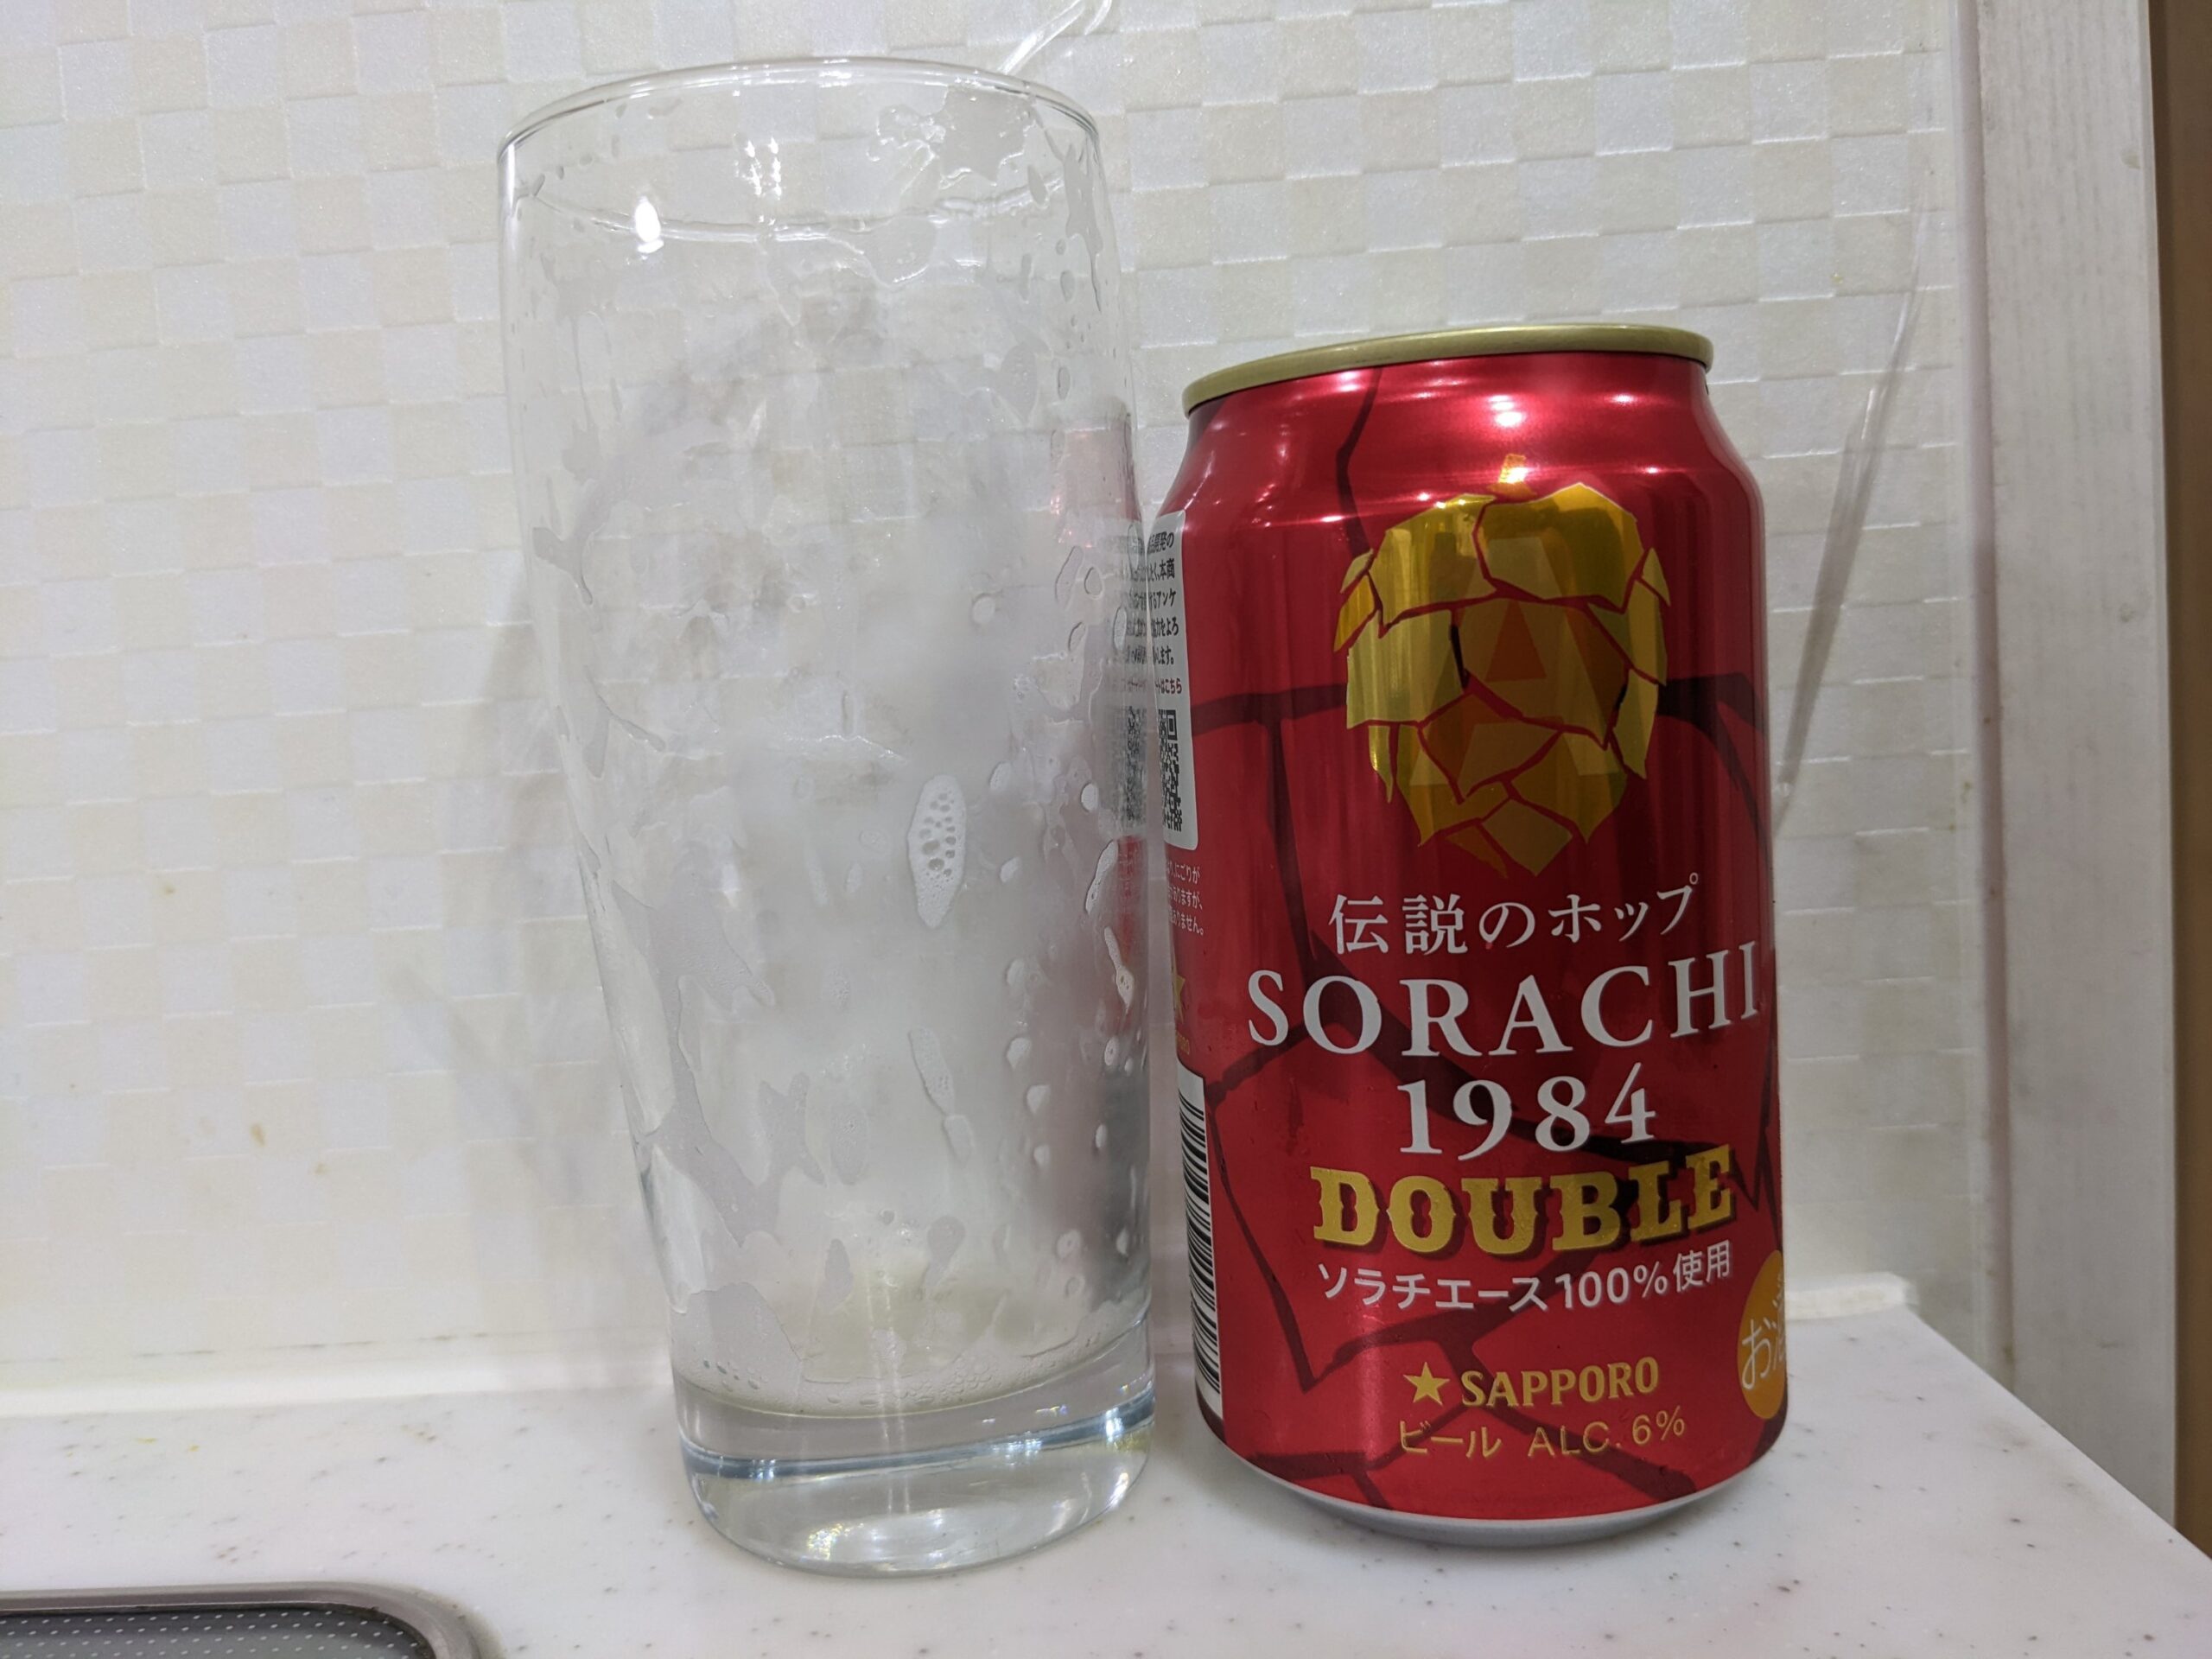 「ソラチ1984ダブル」を飲み終えたグラスとその空き缶